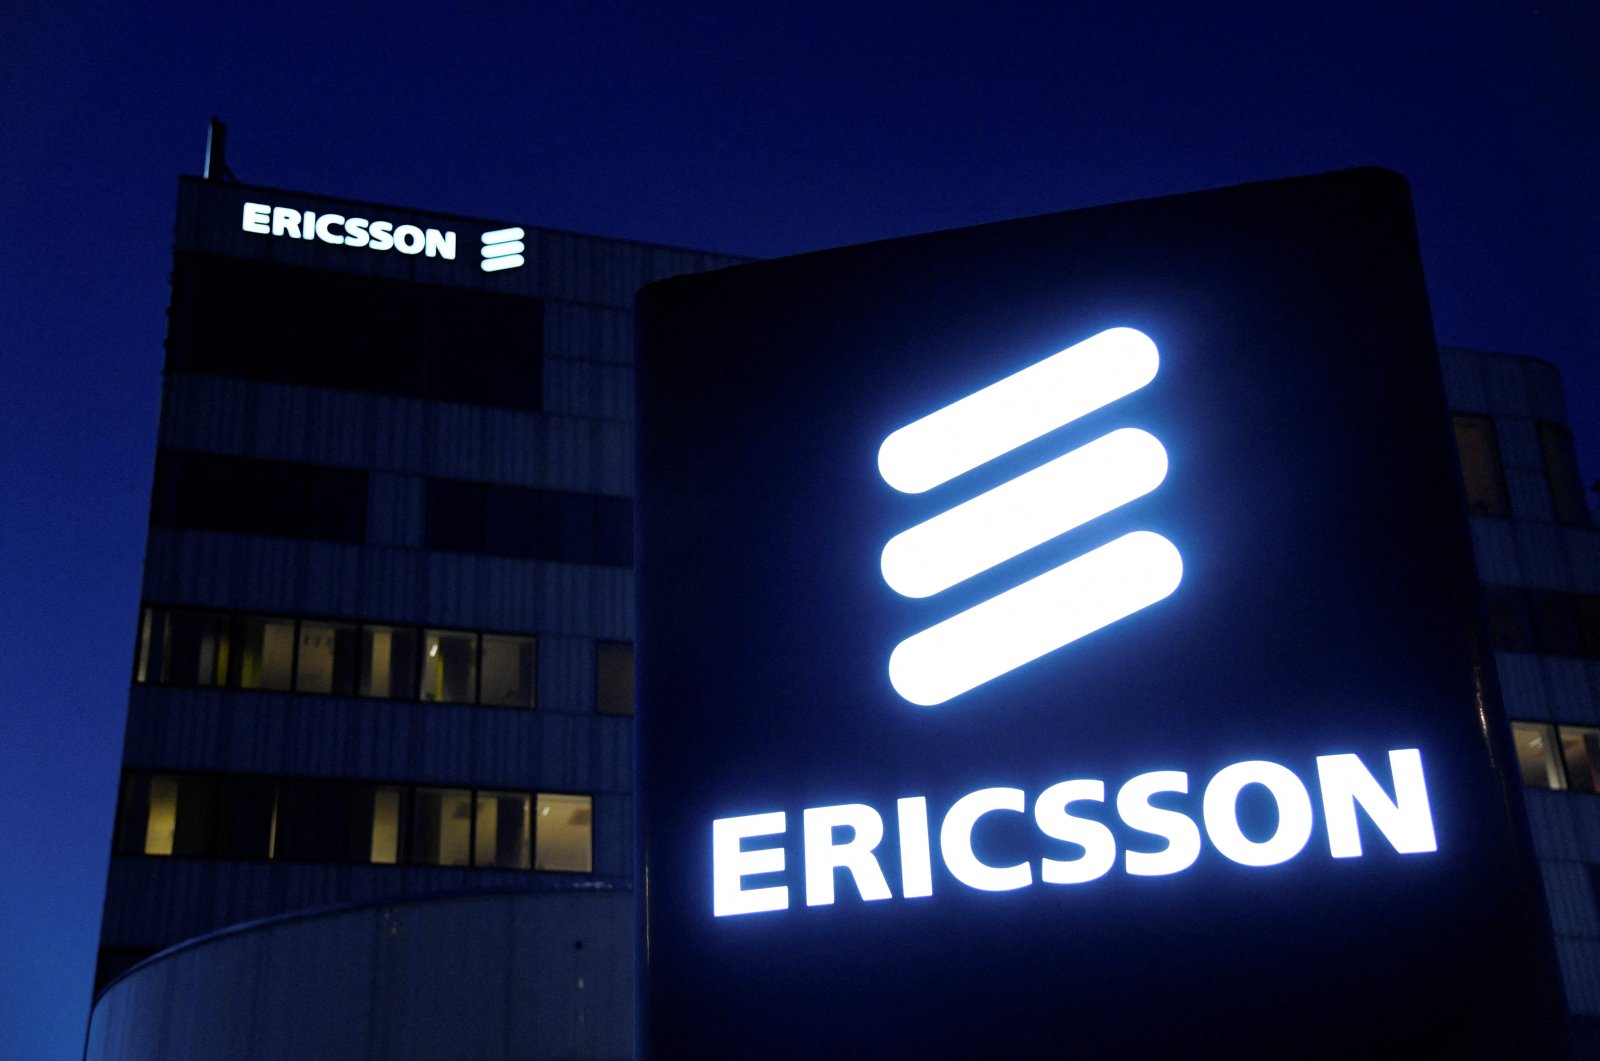 Ericsson setuju untuk membayar lebih dari 6 juta kepada AS dalam penyelidikan penyuapan